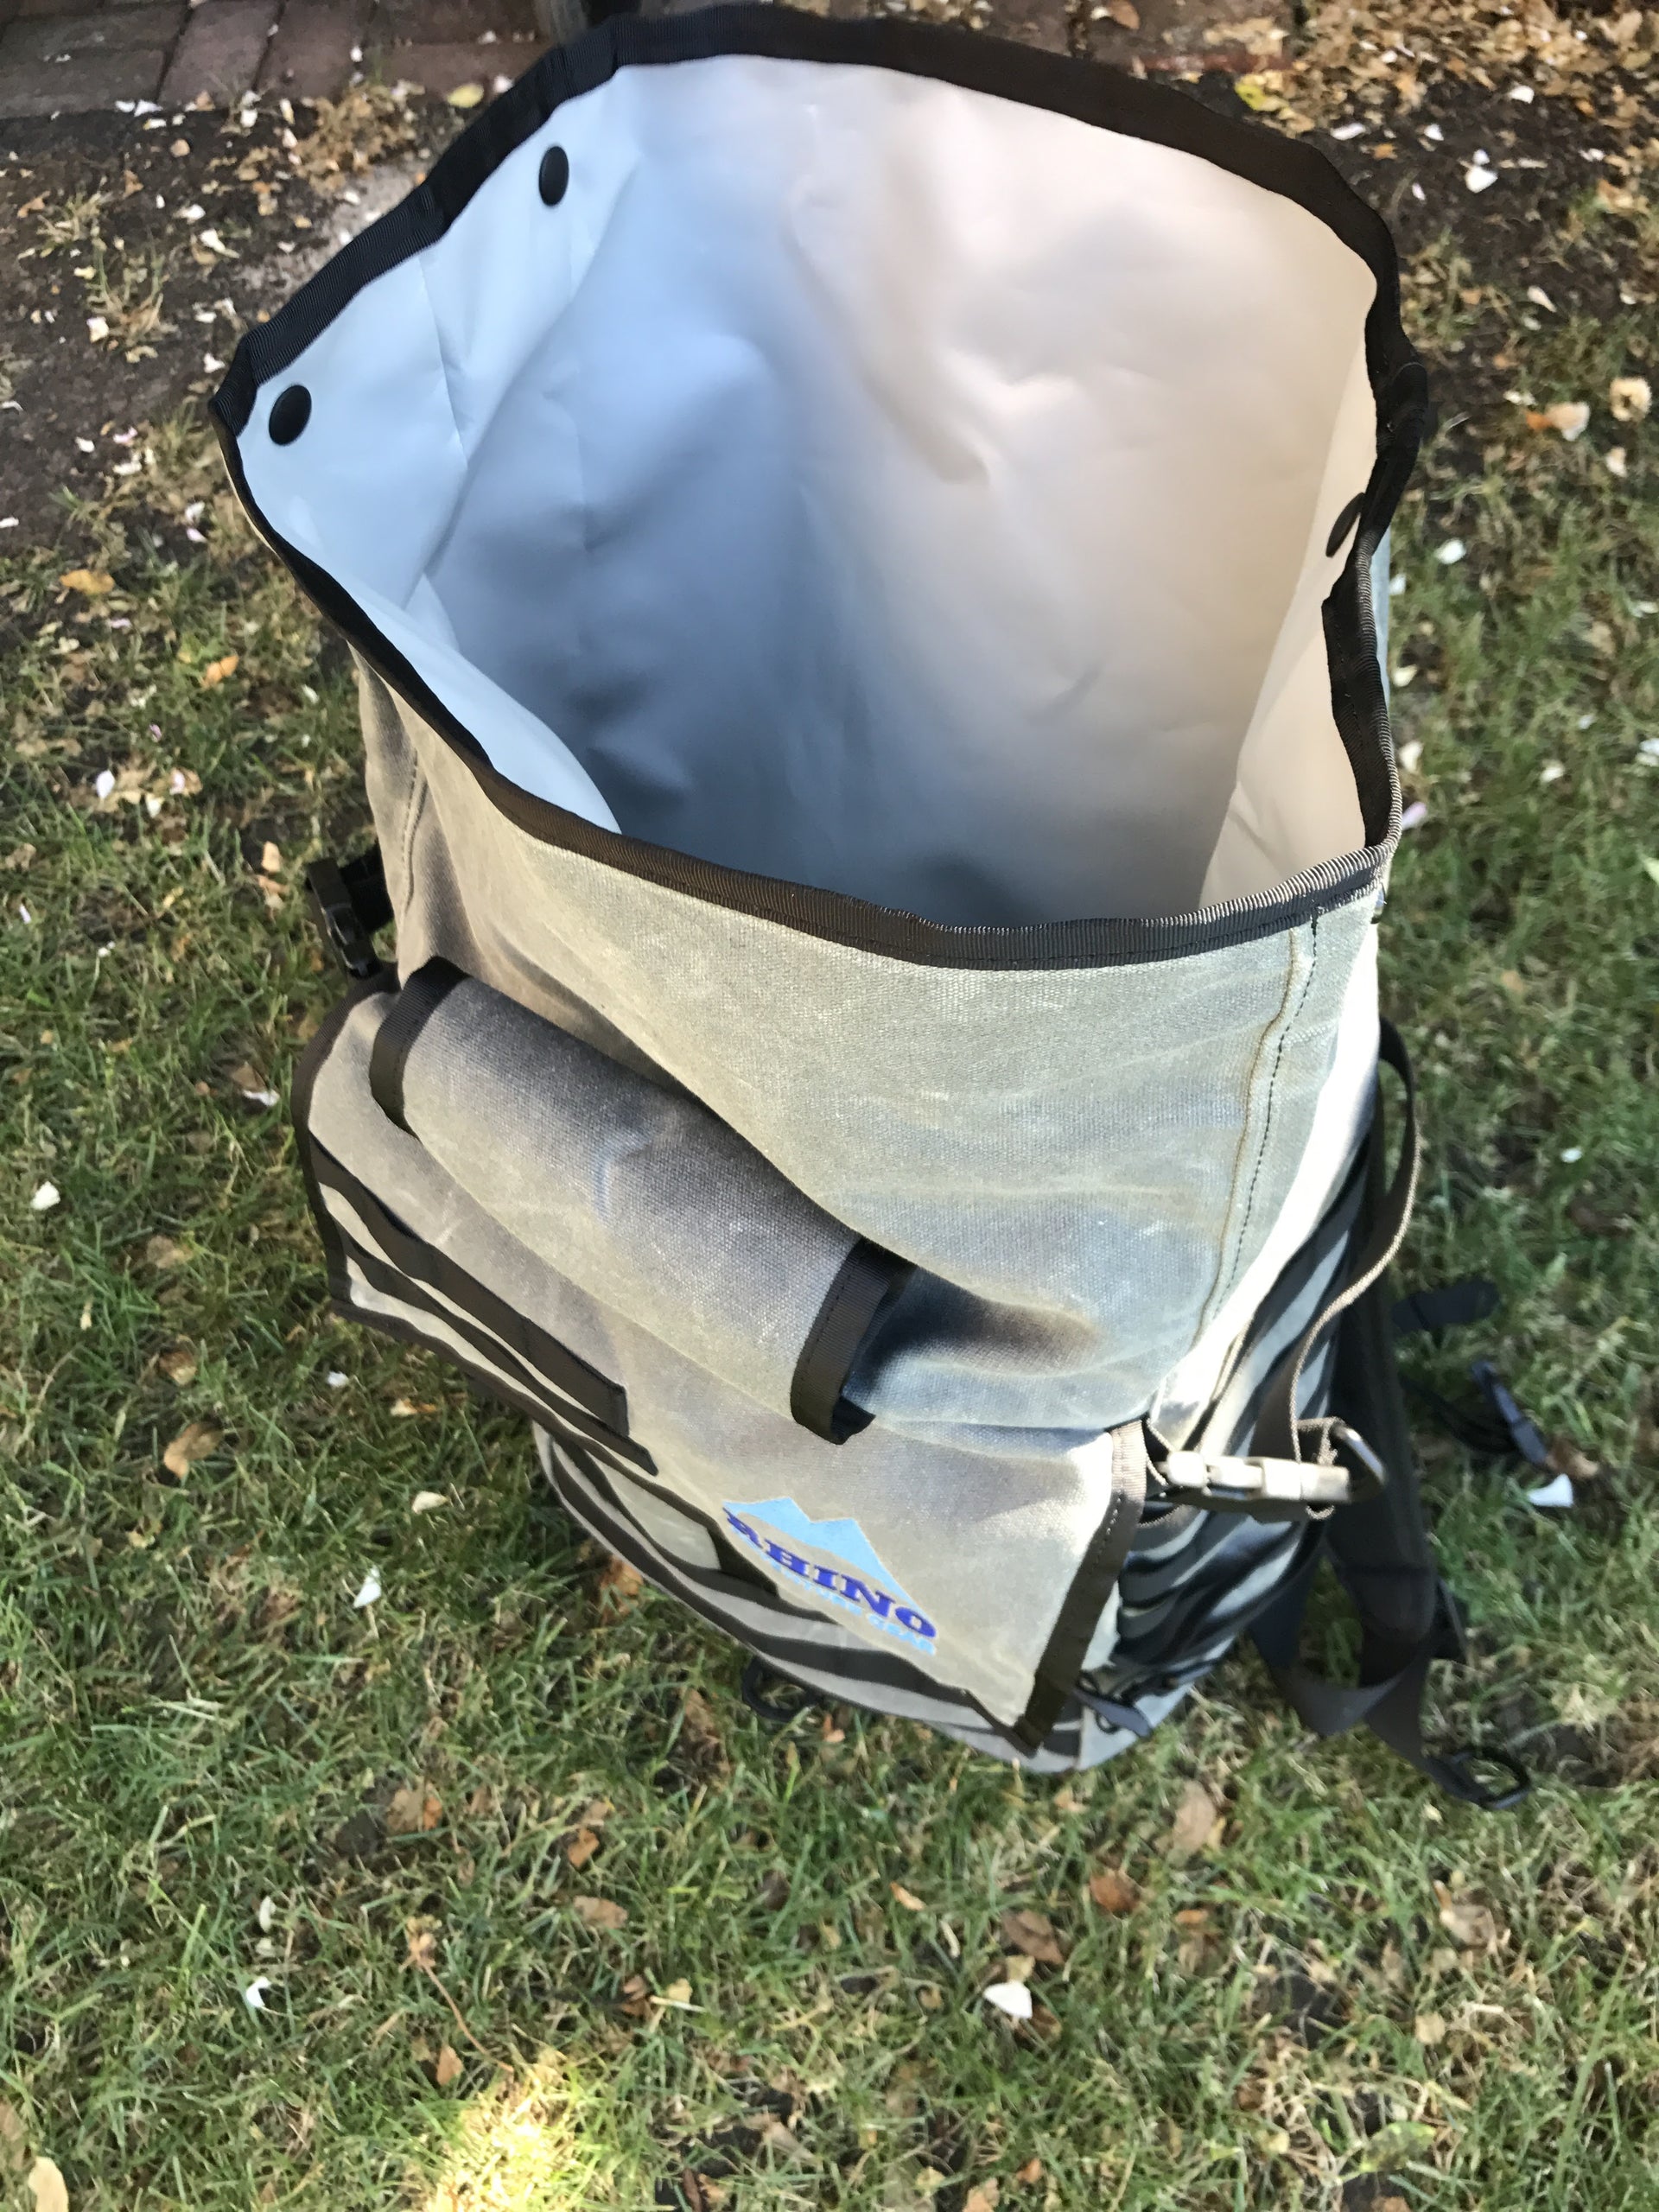 View inside waterproof inner lining of Rhino Adventure Gear's handmade Adventure Backpack